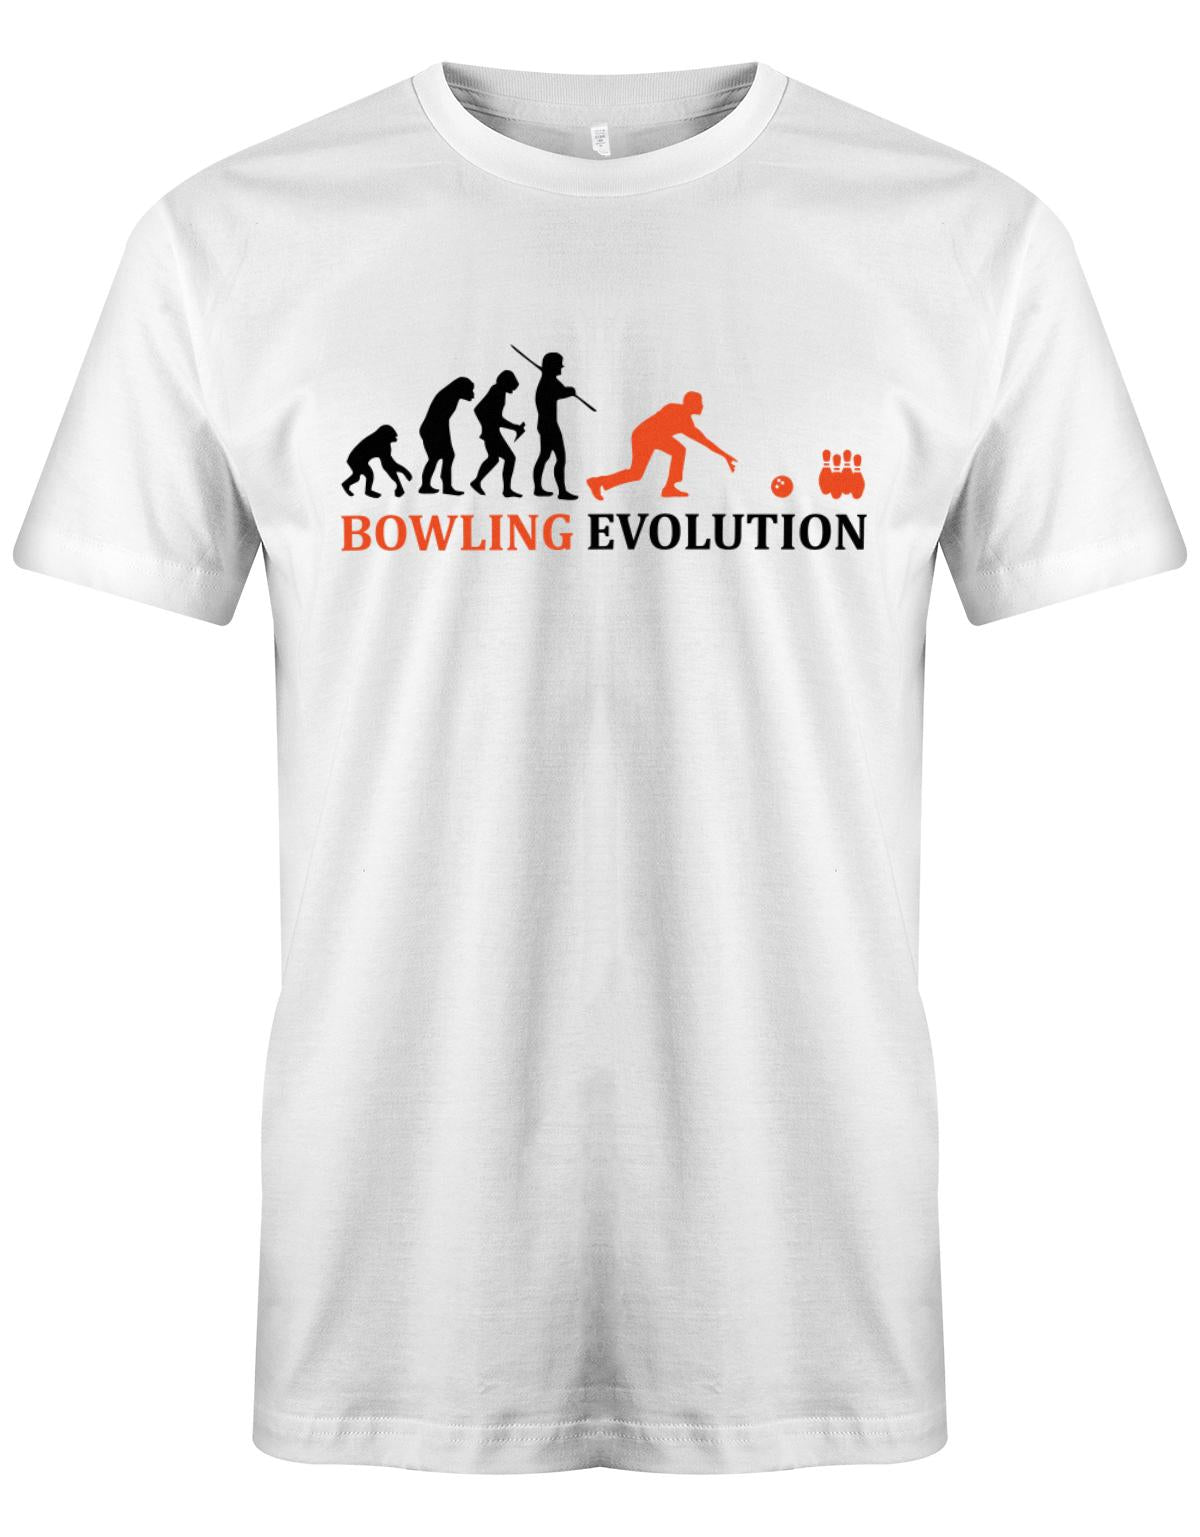 Bowling-Evolution-Bowler-Herren-Shirt-Weiss